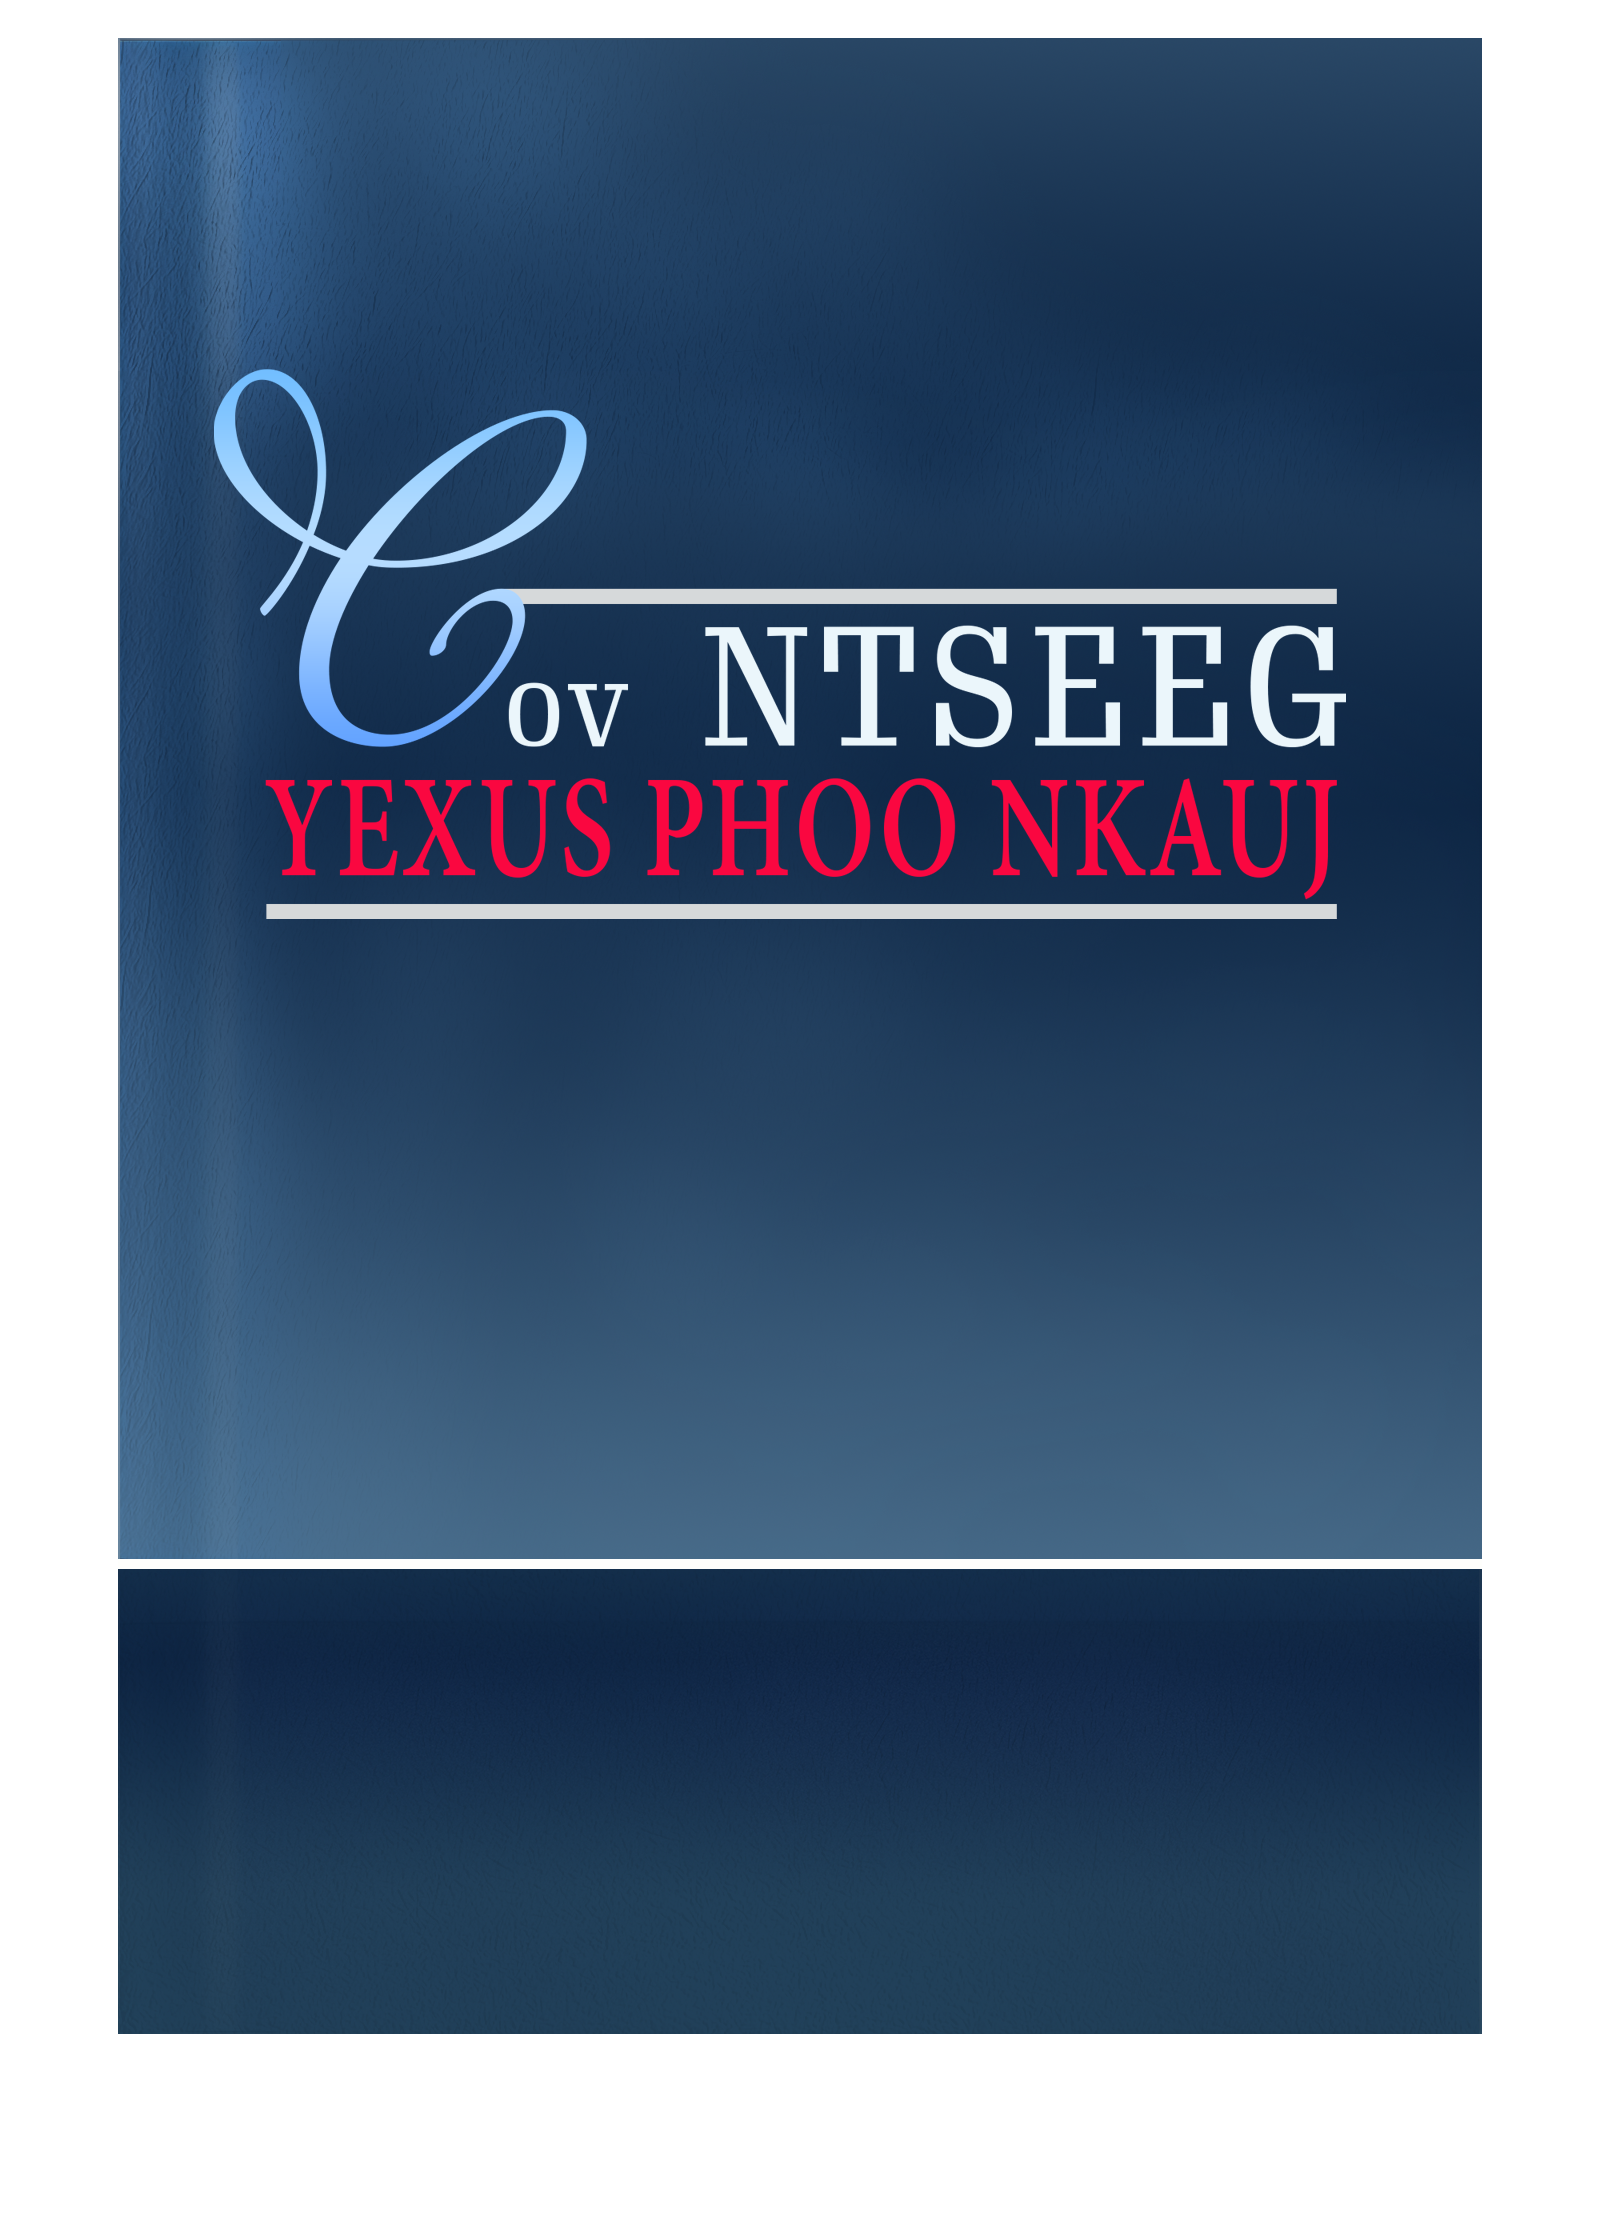 Cov Ntseeg Yexus Phoo Nkauj